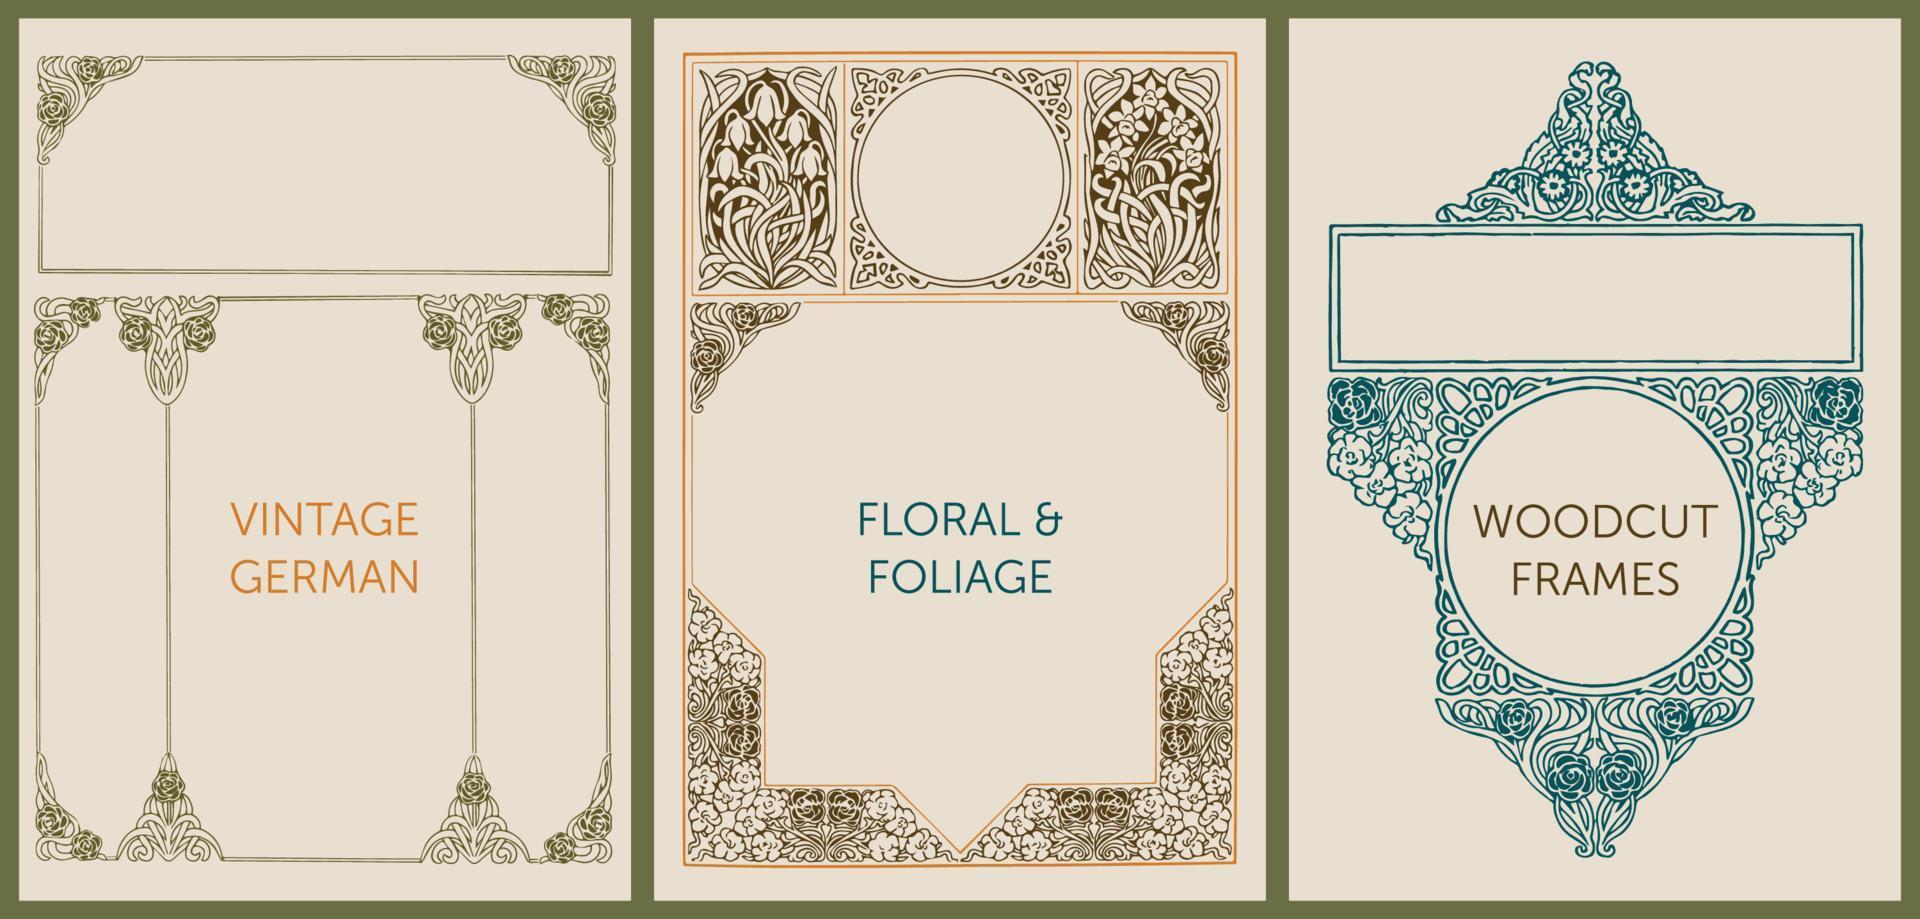 éléments de conception florale de gravure sur bois vintage pour les livres, les invitations, les étiquettes, la conception de menus et l'emballage. fleurs, feuillages, feuilles et ornements. vecteur